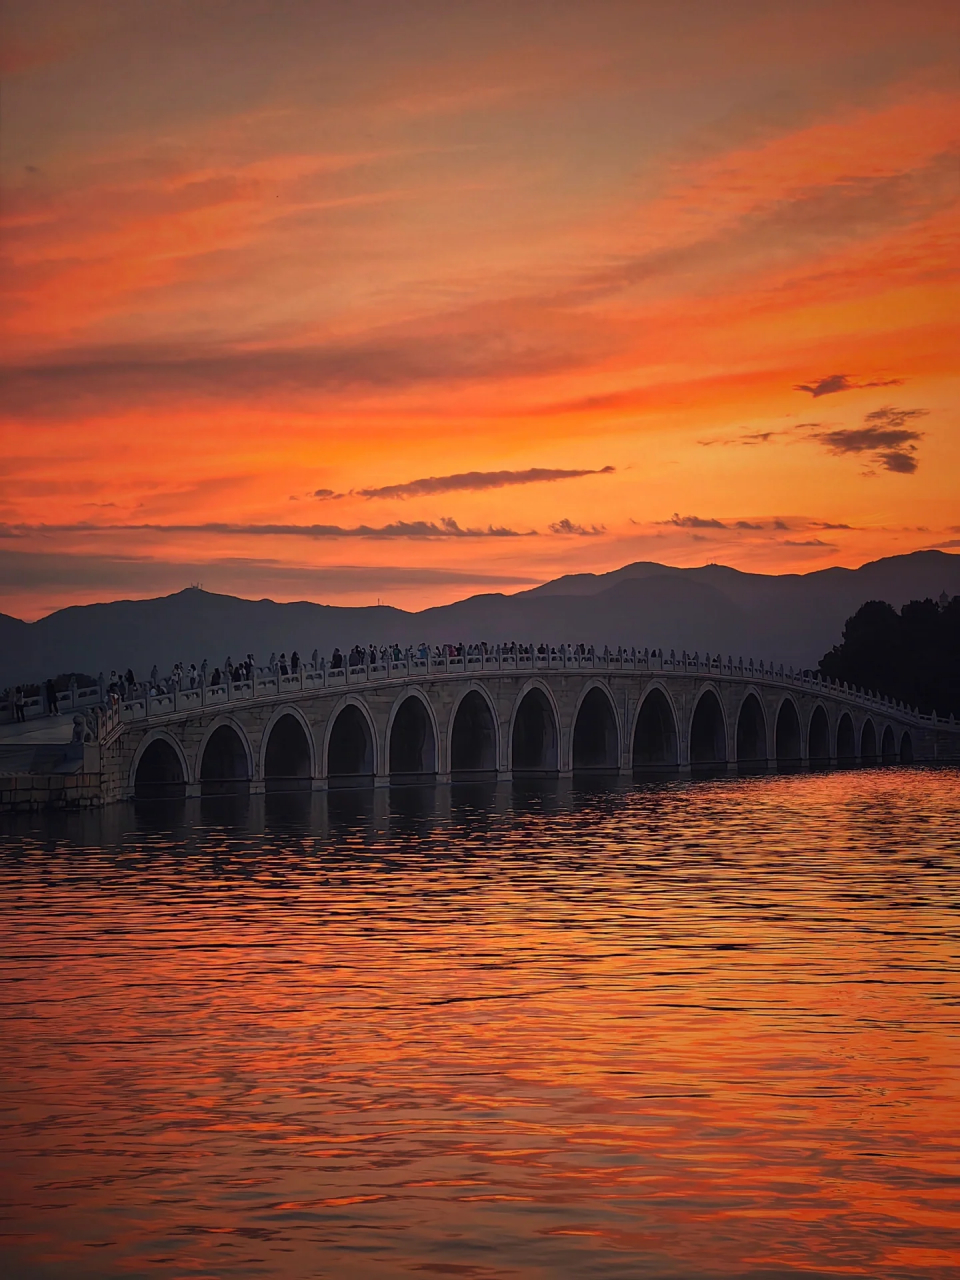 晚霞  十七孔桥,佛香阁,游船,游客, 组成了一幅幅美丽的图片, 摄影